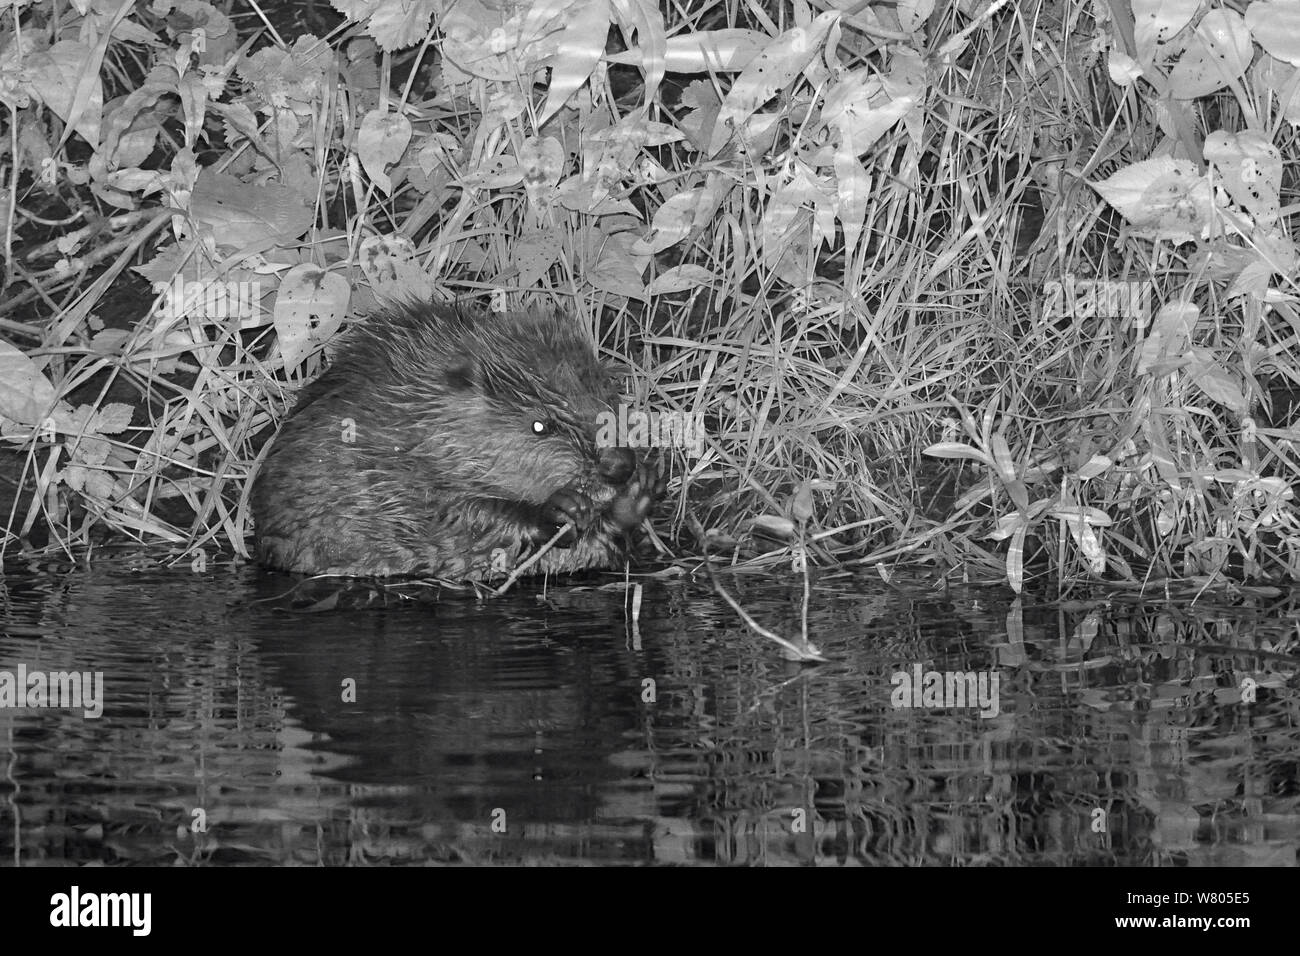 Le castor d'Eurasie (Castor fiber) kit se nourrissant de saule (Salix) la nuit, né à l'état sauvage sur la rivière La Loutre, partie d'une presse projet géré par le Devon Wildlife Trust, Devon, Angleterre, Royaume-Uni, août 2015. Banque D'Images